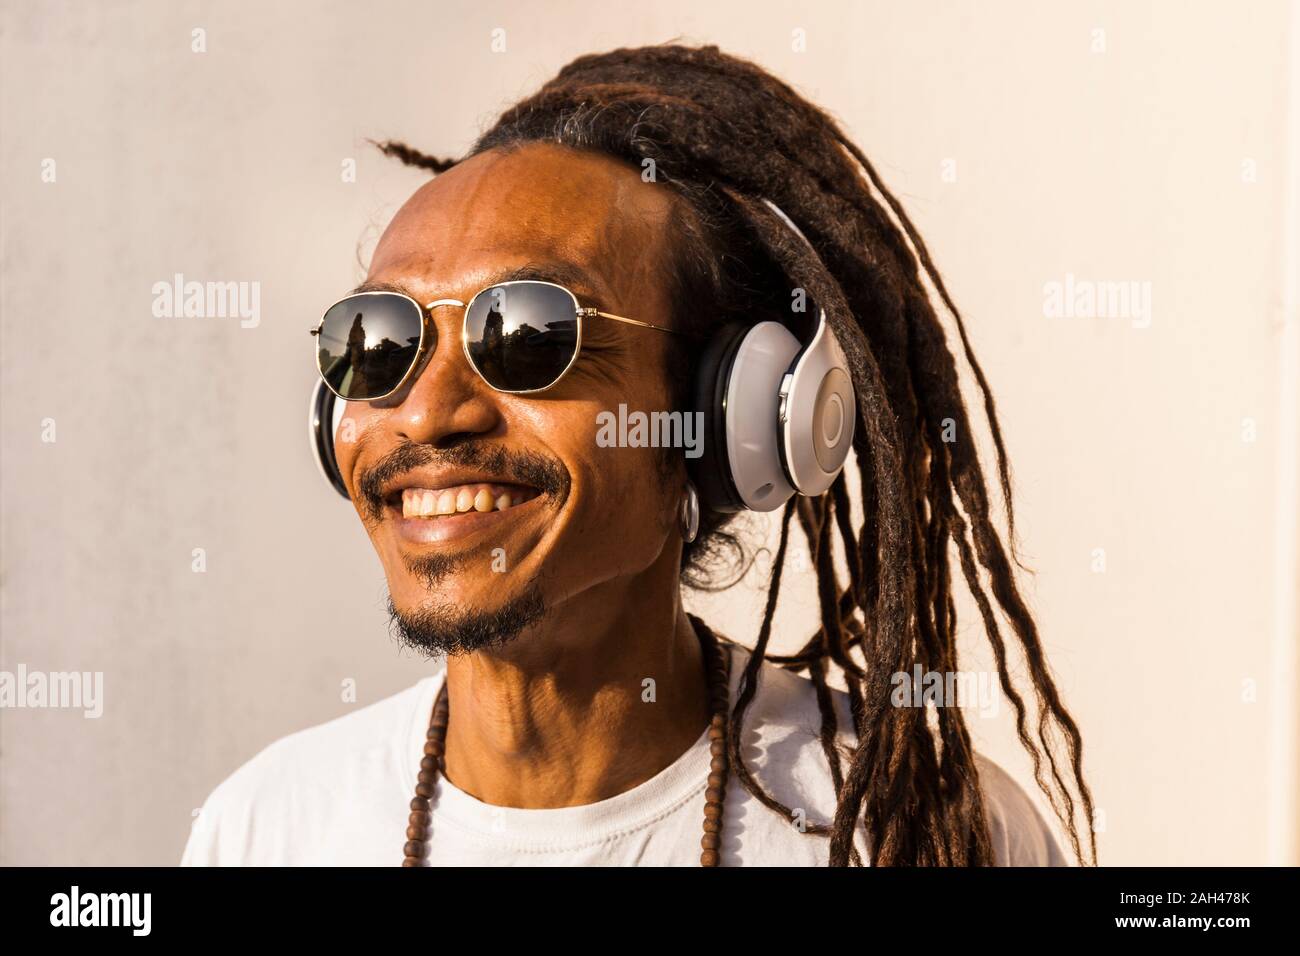 Retrato del hombre maduro sonriente con dreadlocks y auriculares, escuchando música y mirando hacia los lados Foto de stock